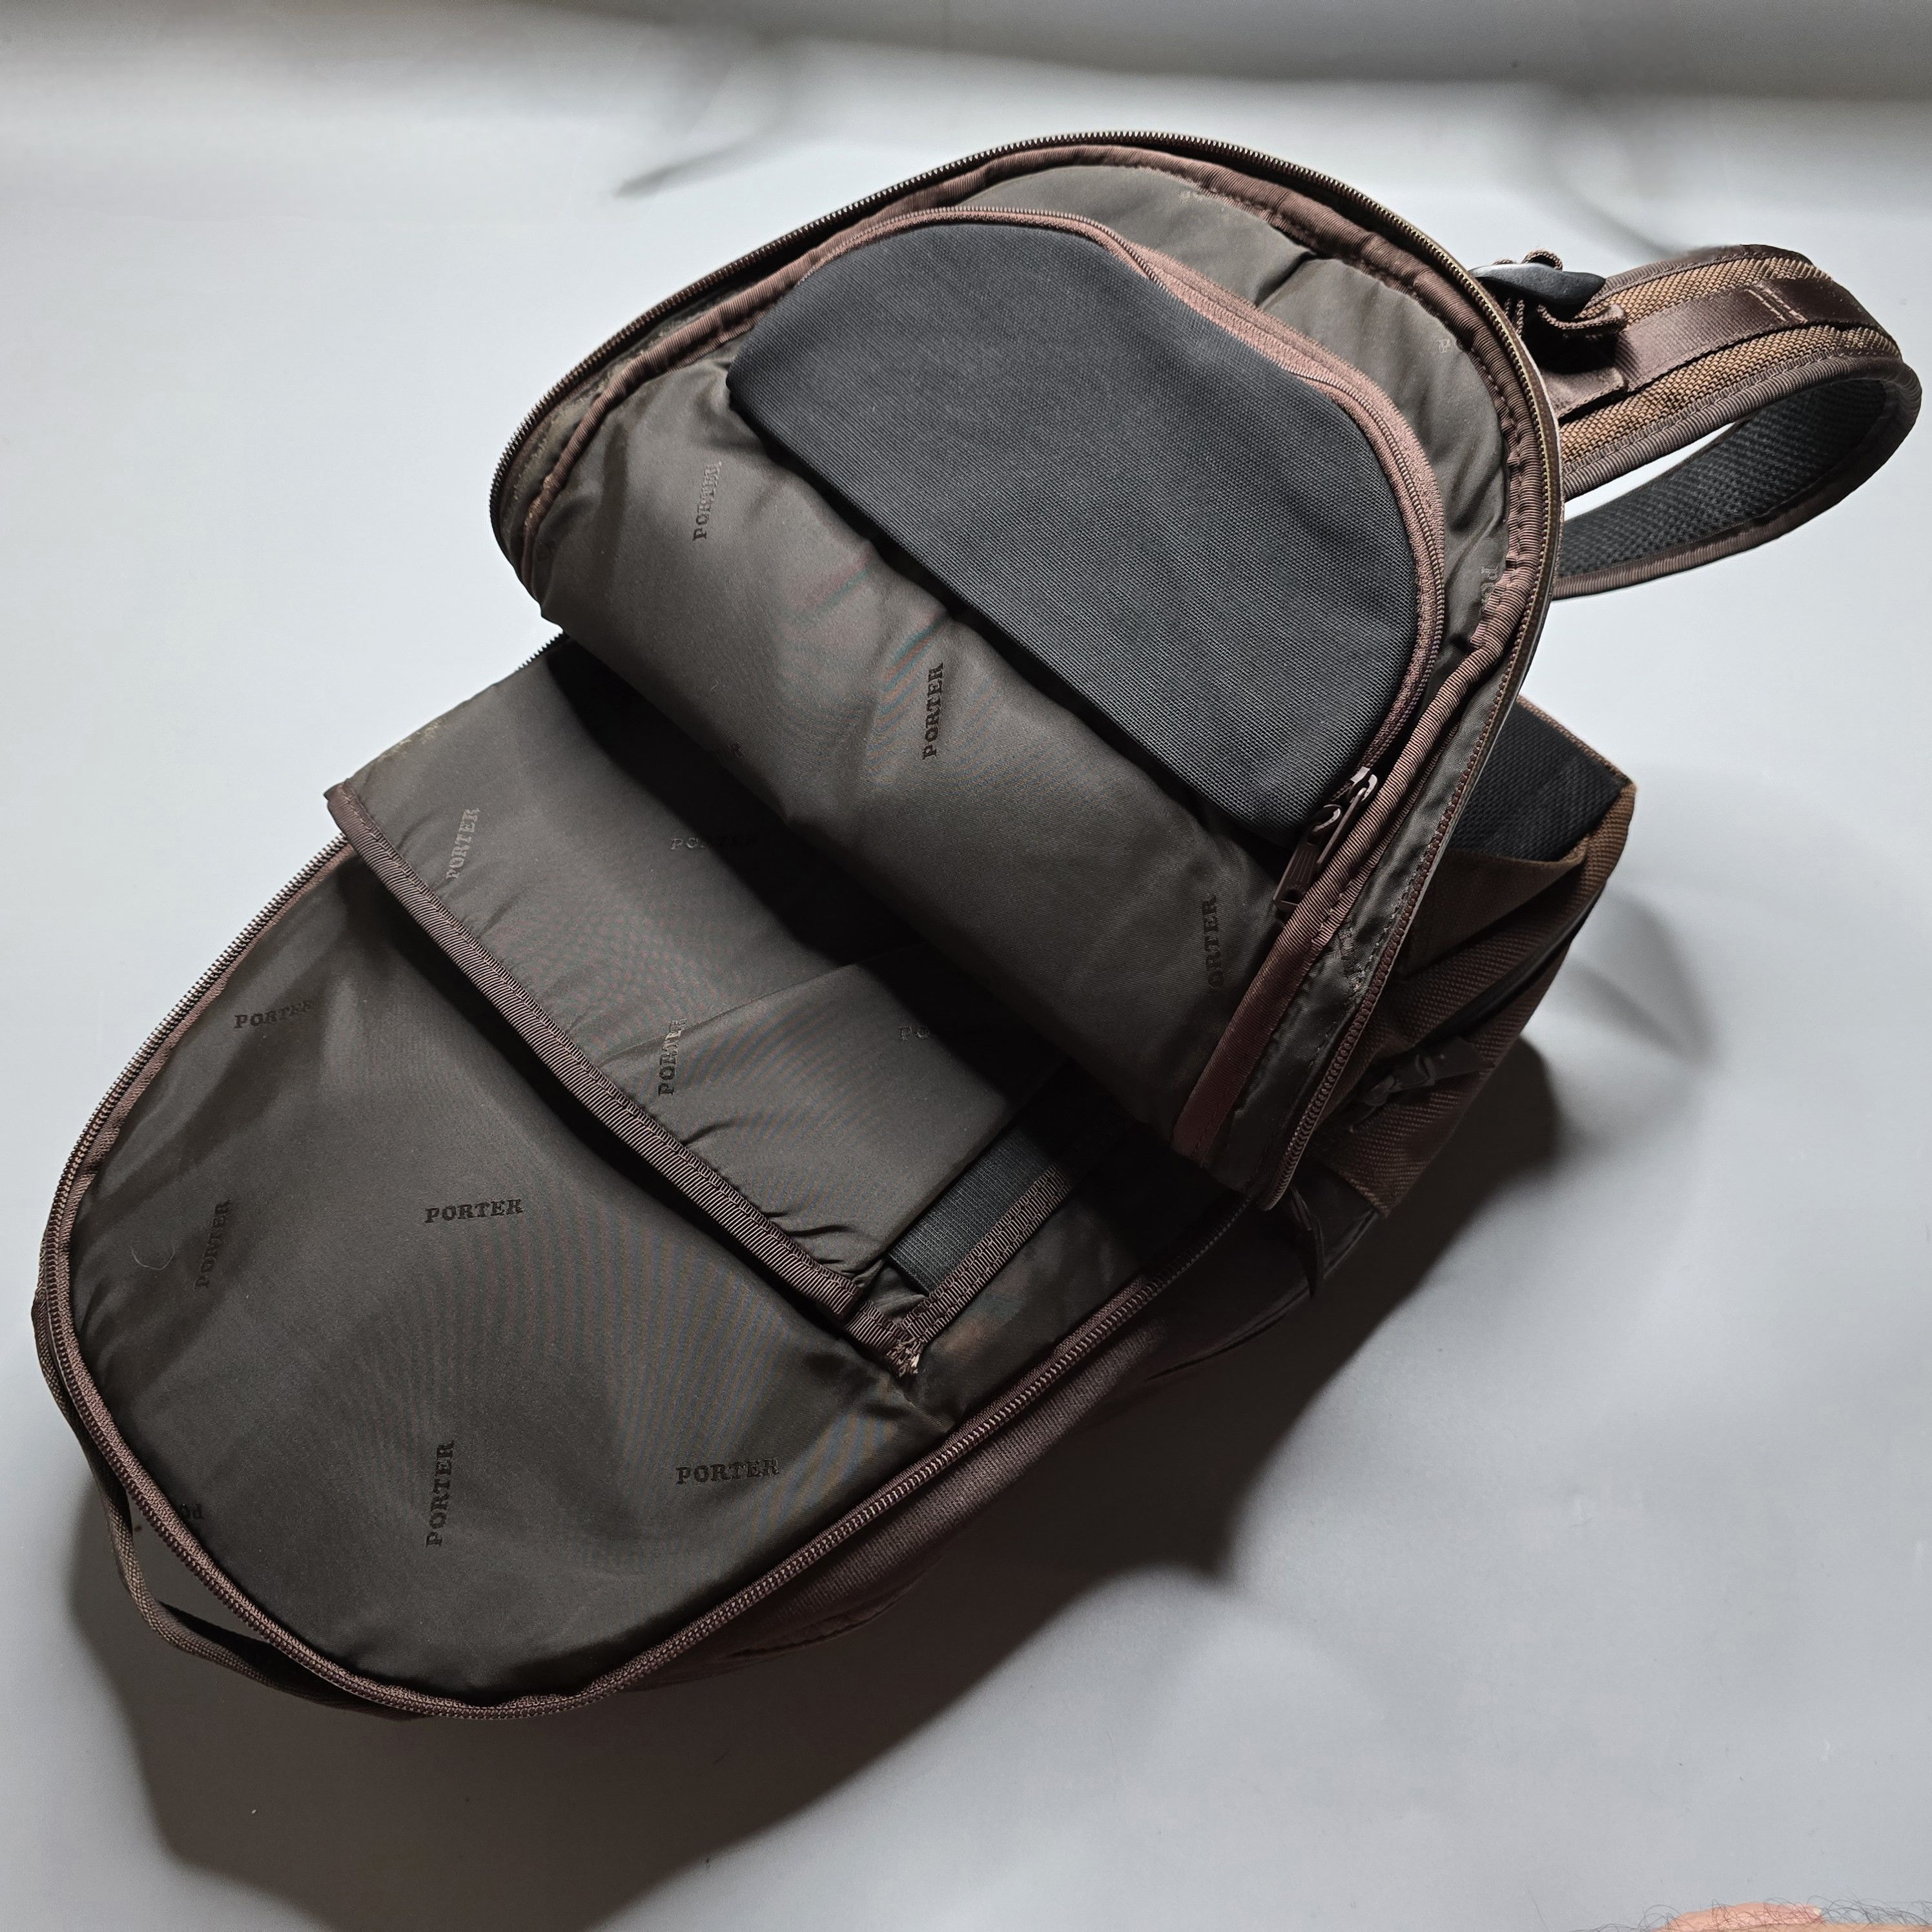 Yoshida & Co. Porter - Zoom Leather Backpack - 8